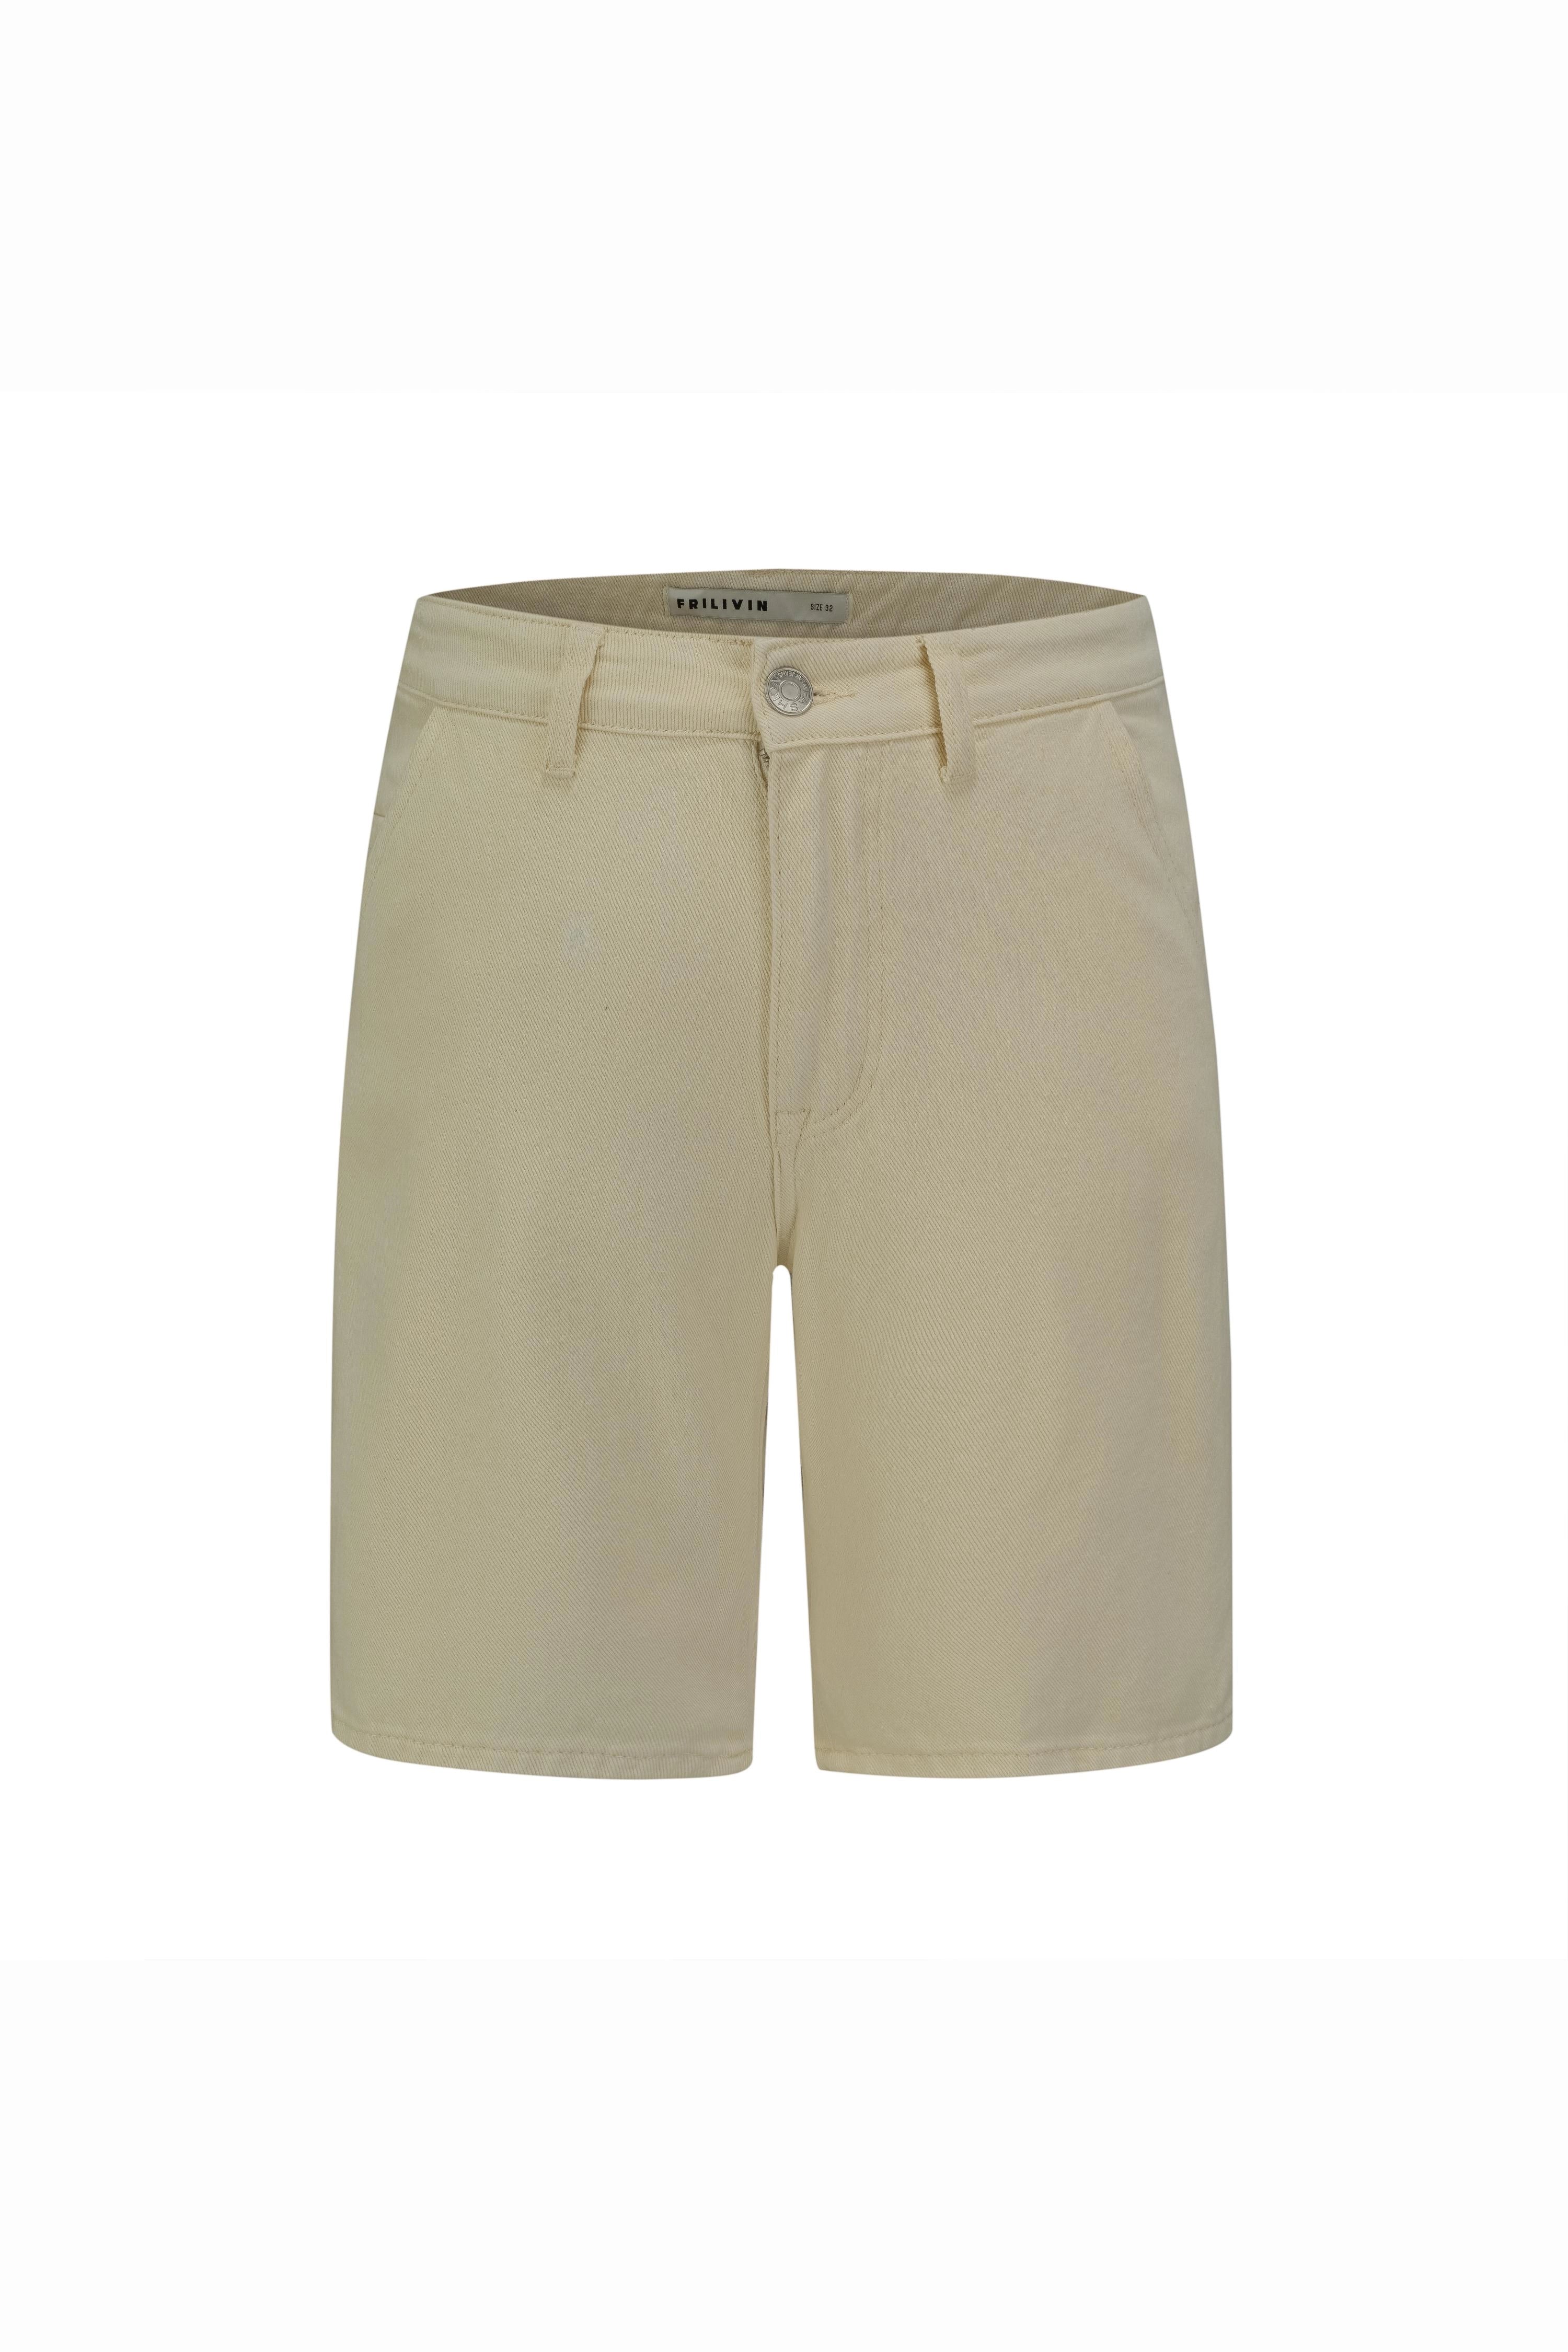 Basic plain denim shorts